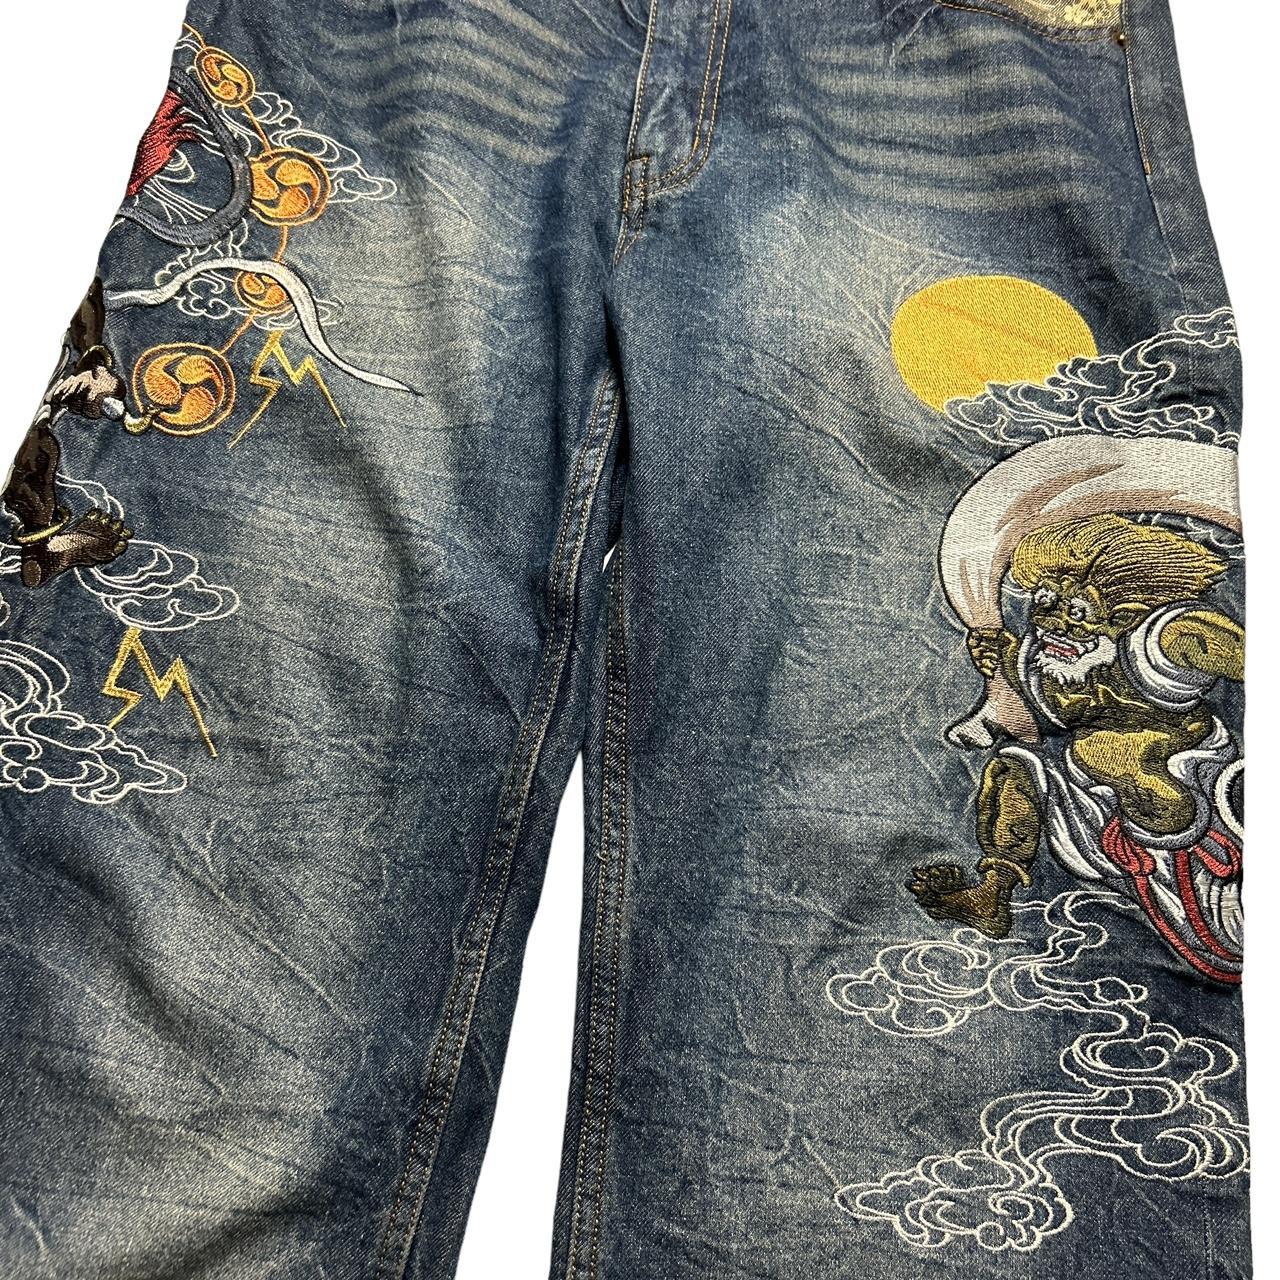 Japanese Denim Jeans (38")